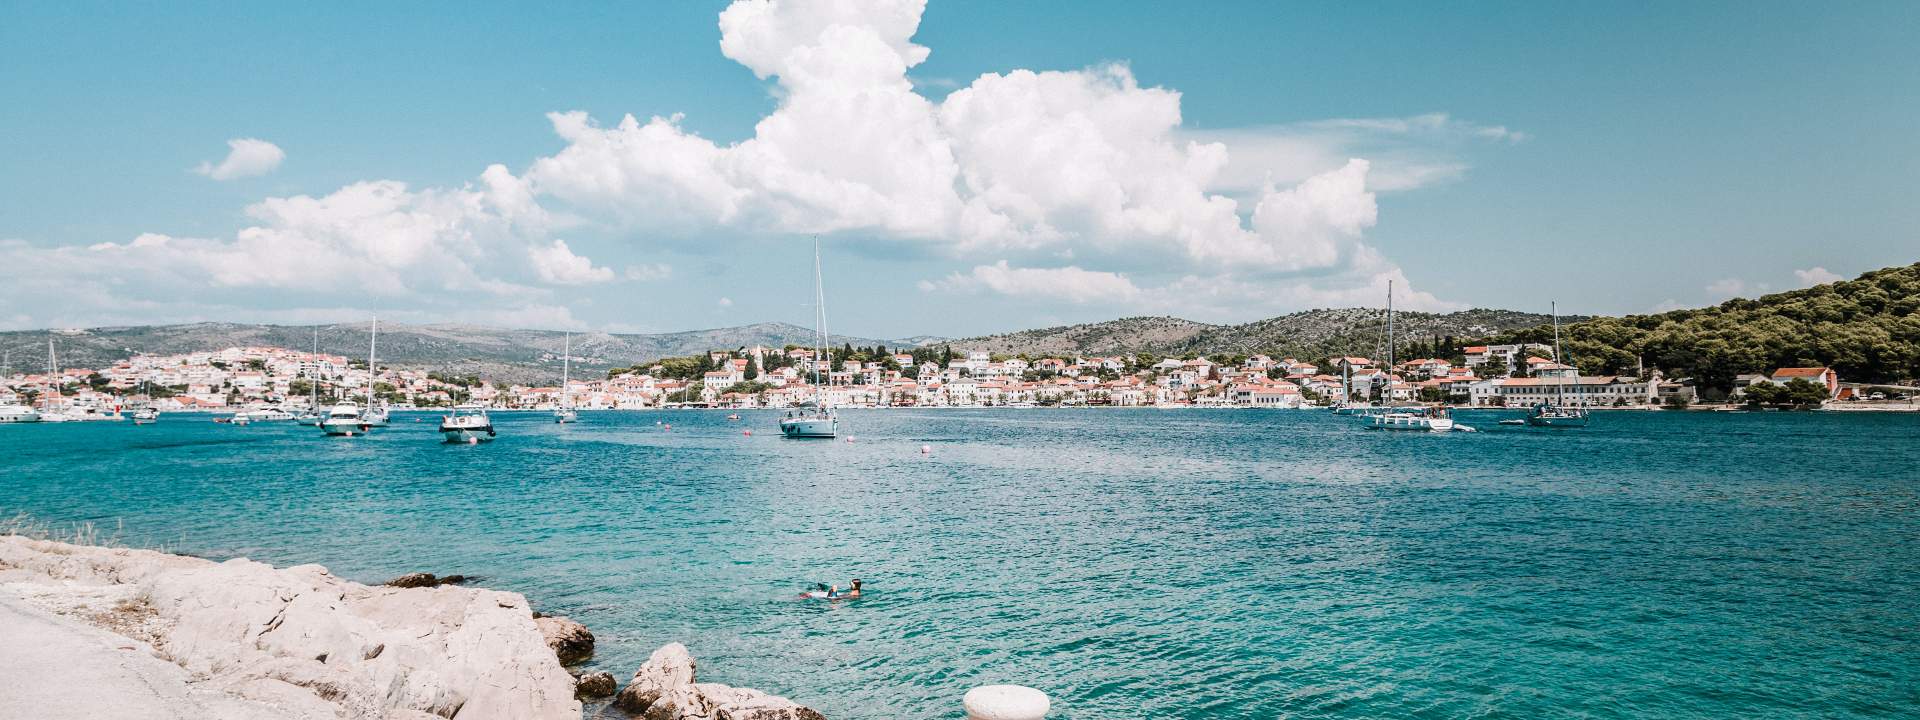 Segeln Sie mit mehreren Booten auf den dalmatinischen Inseln